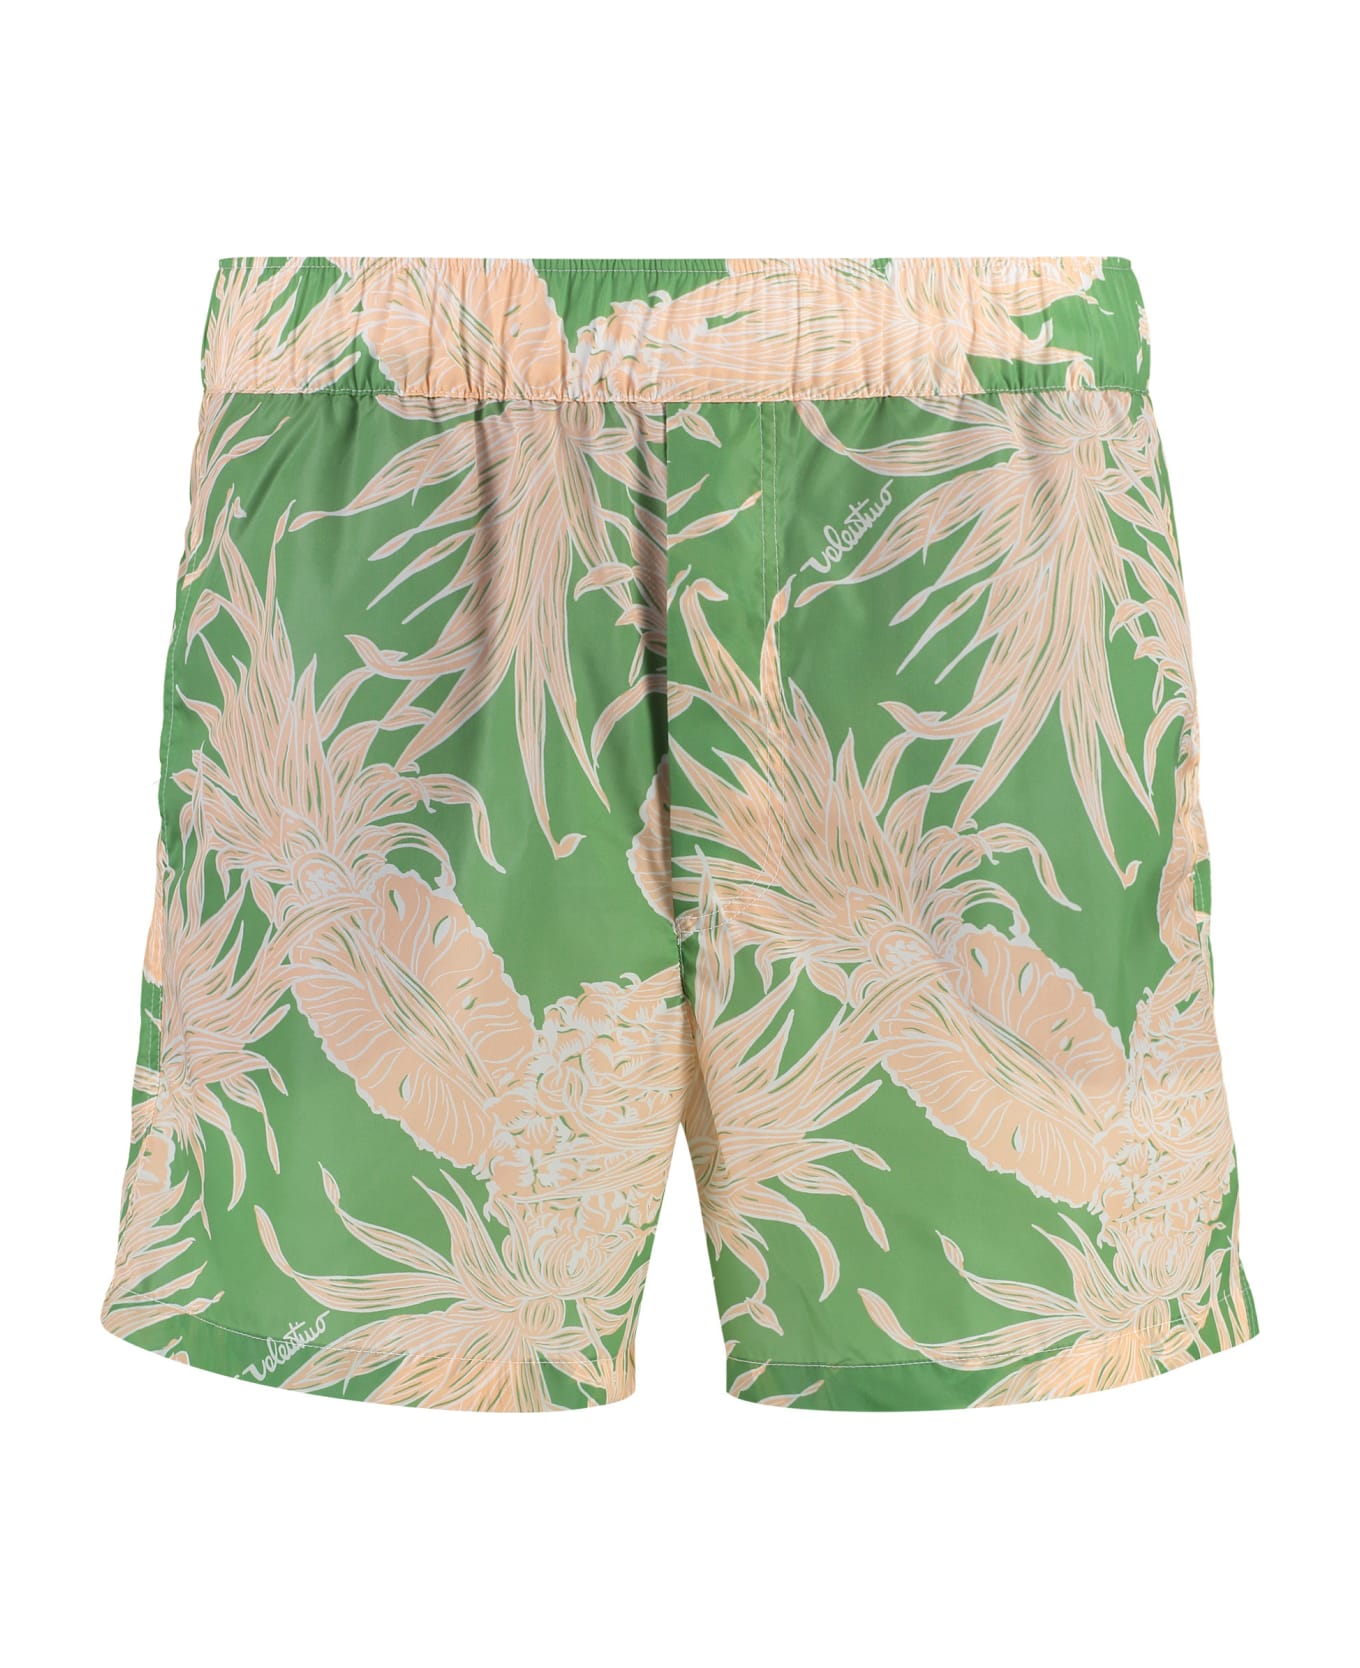 Valentino Printed Swim Shorts - Multicolor